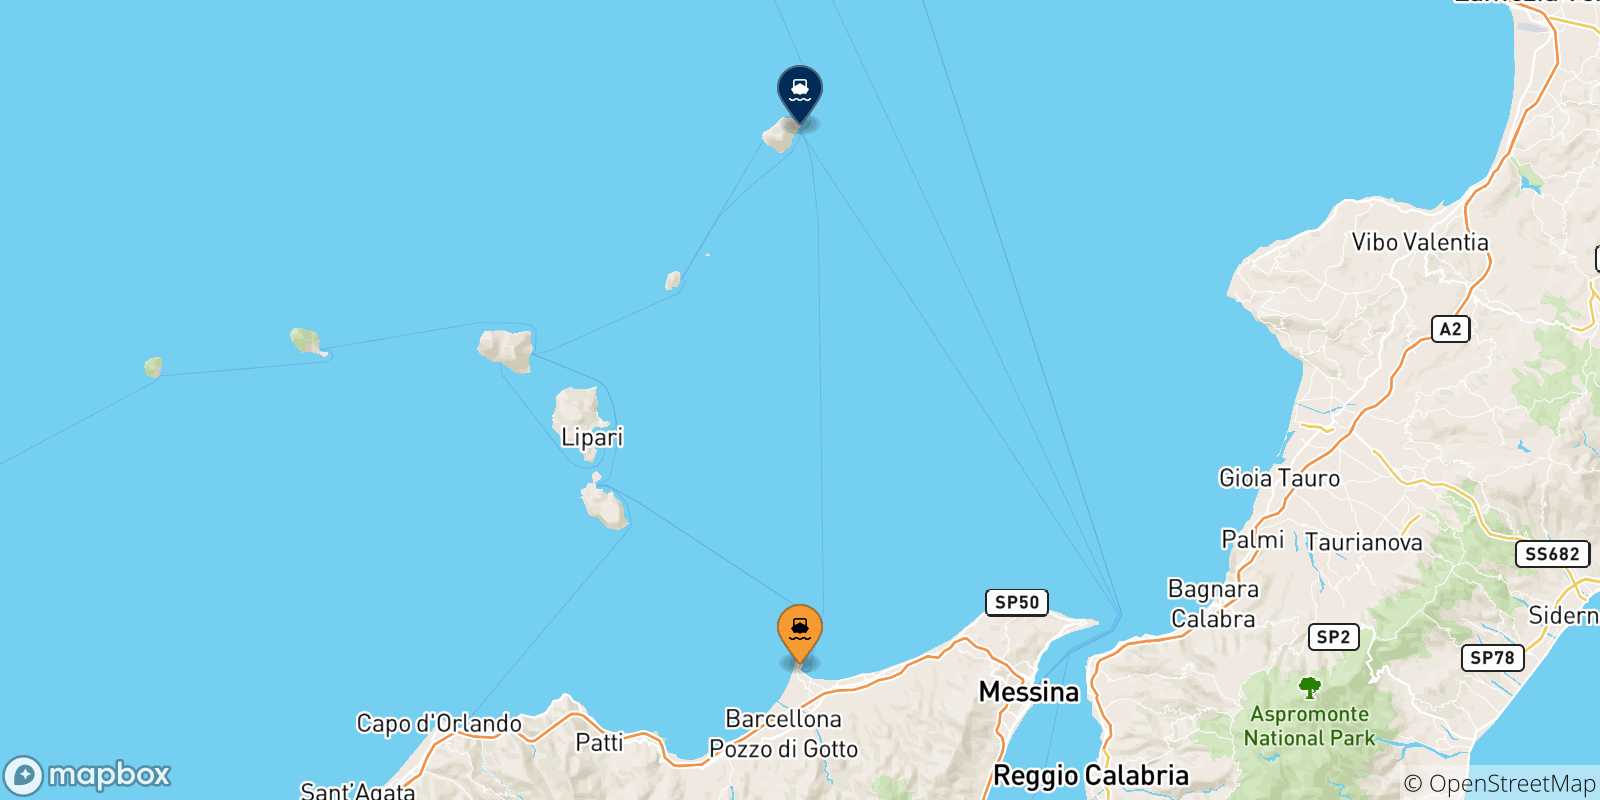 Mappa delle possibili rotte tra la Sicilia e Stromboli